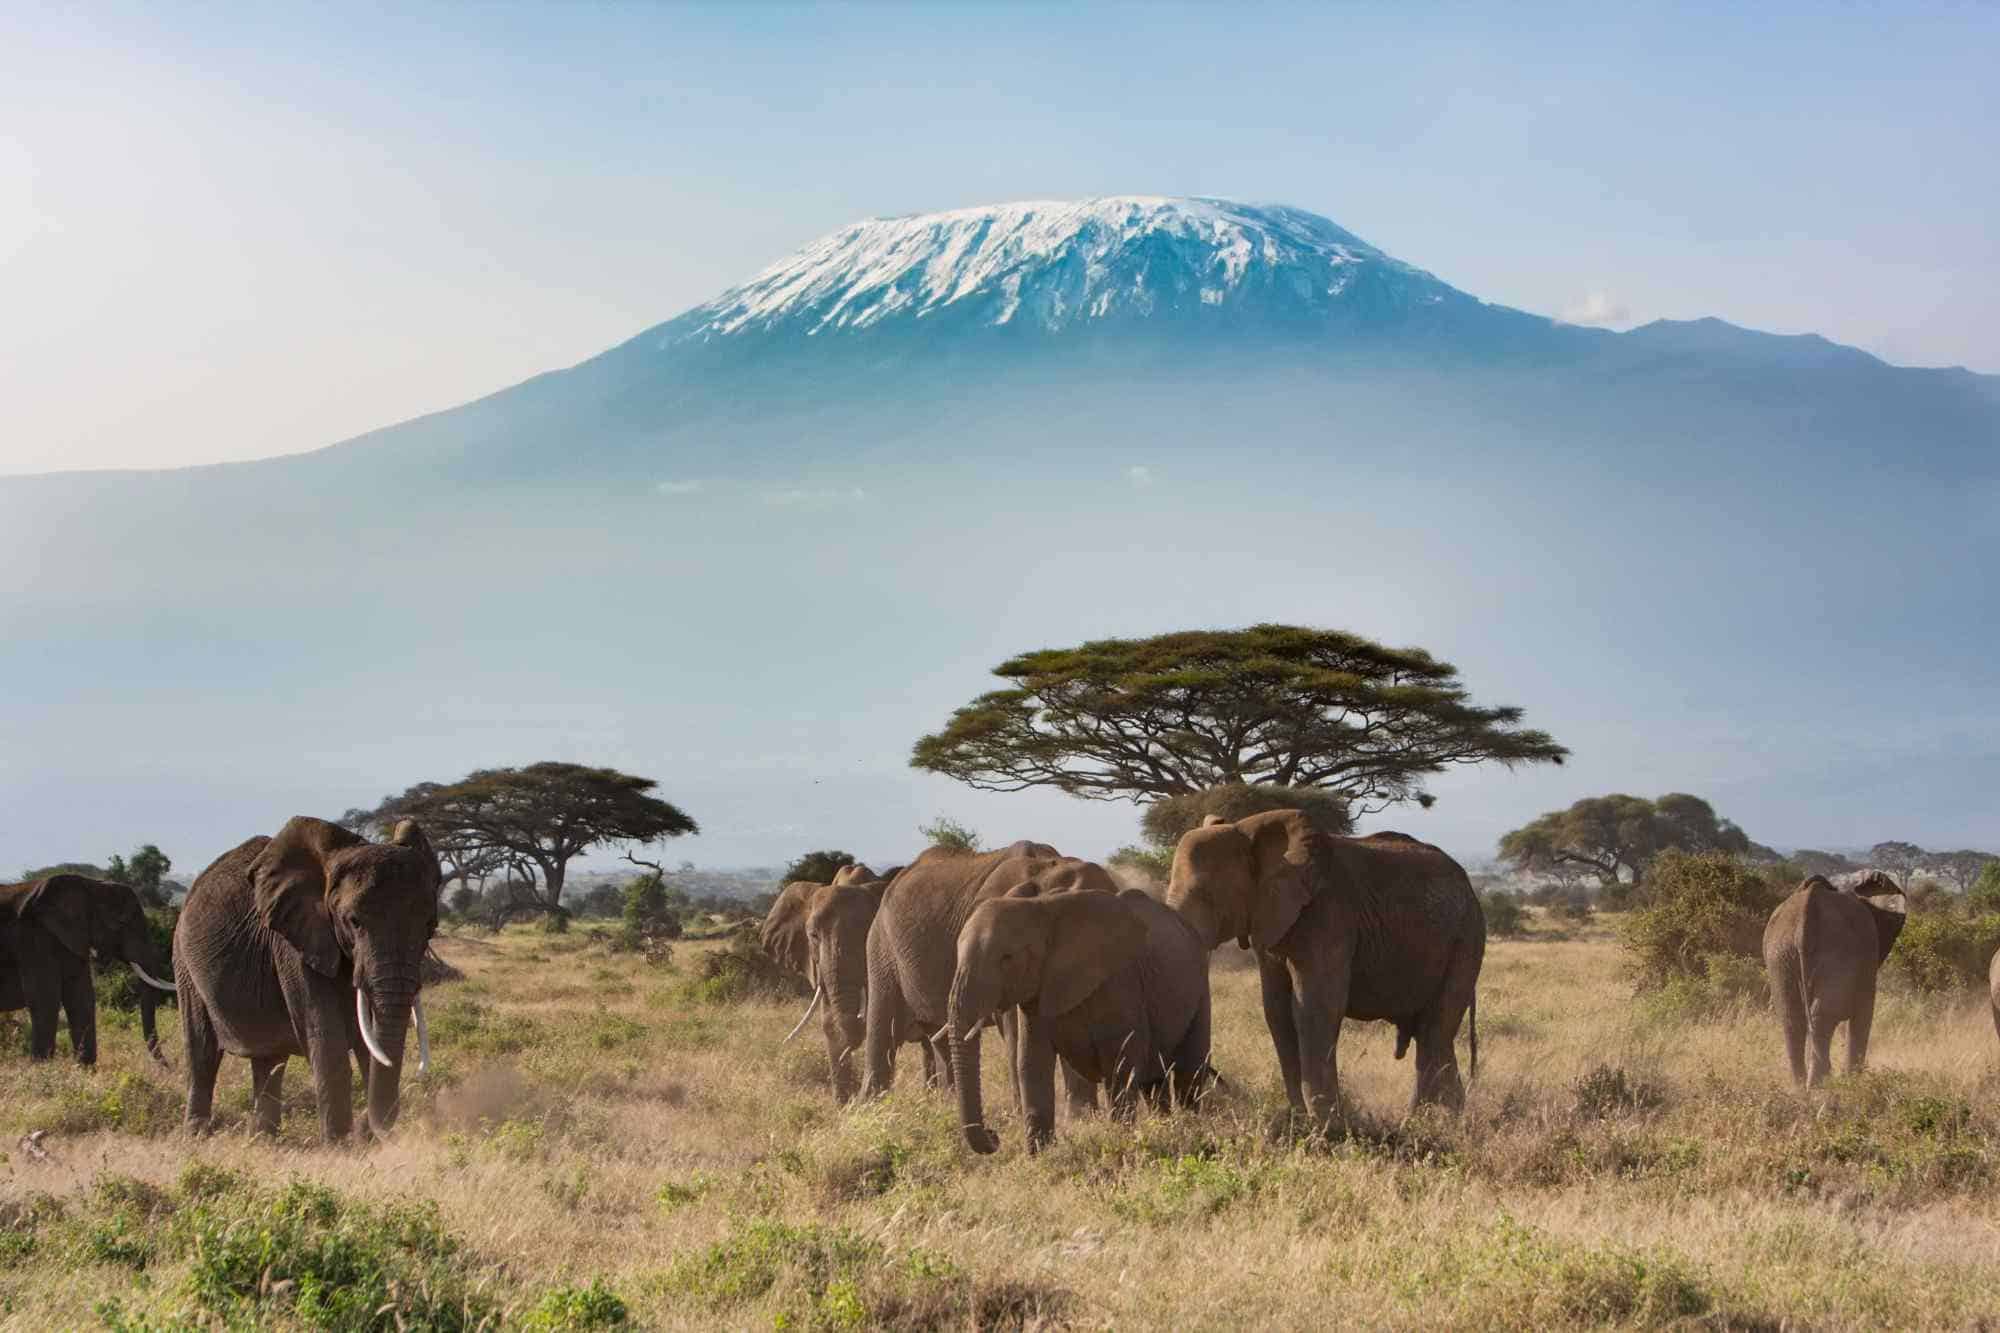 The ultimate Kilimanjaro Climb in Tanzania